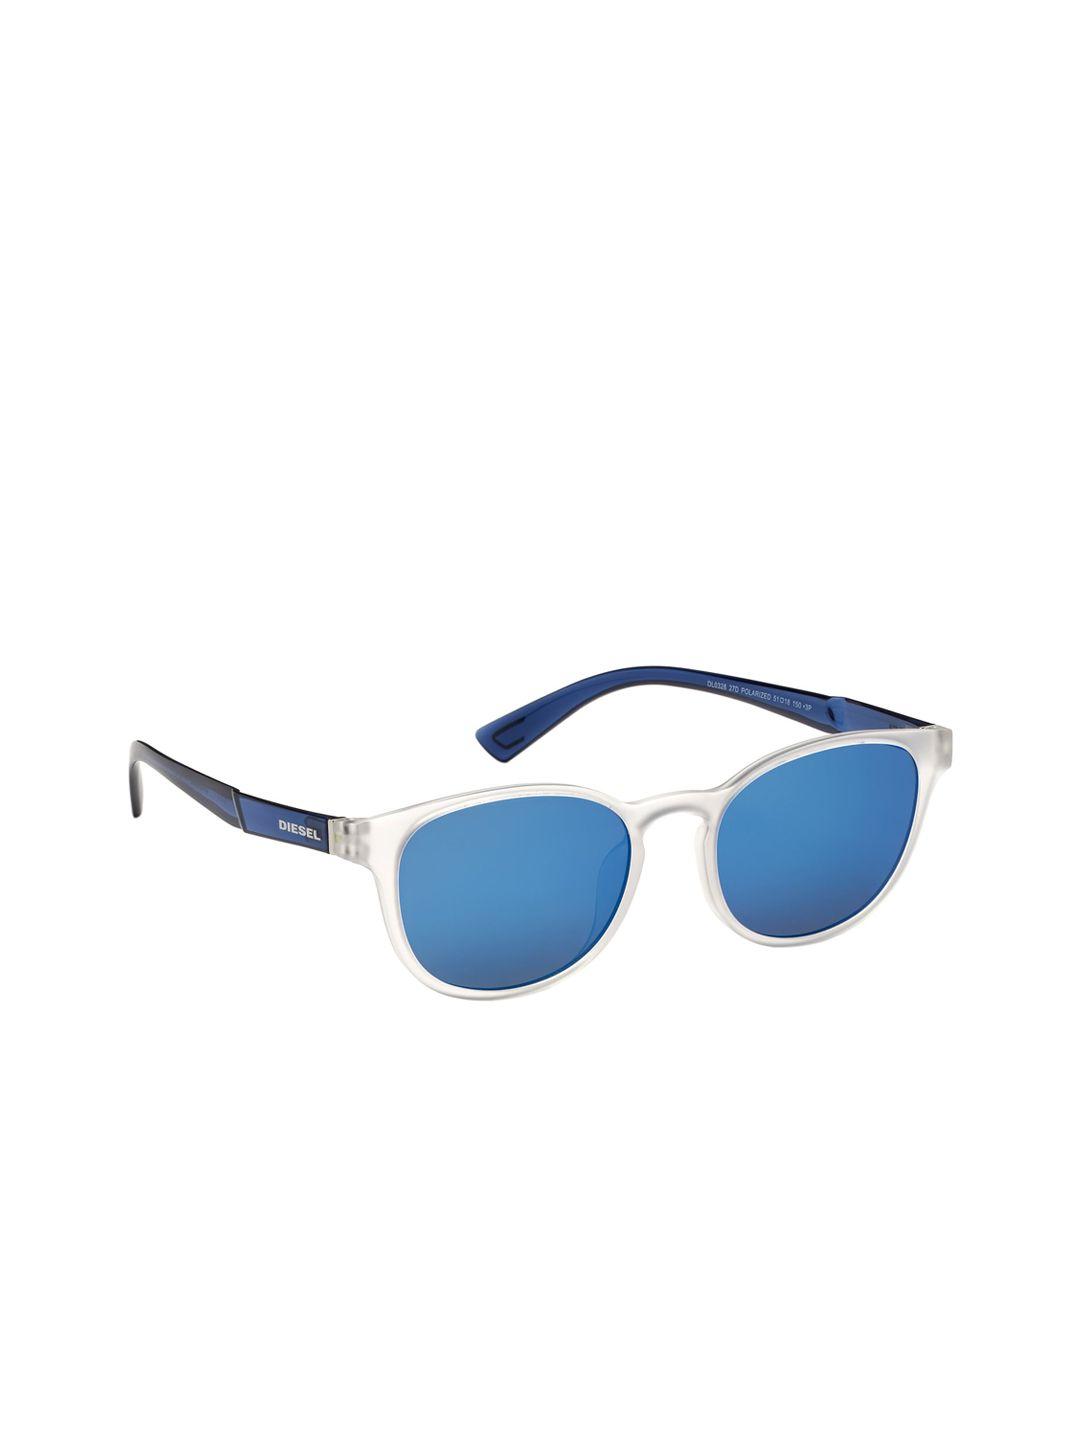 diesel men blue lens & blue round sunglasses dl0328 51 27d